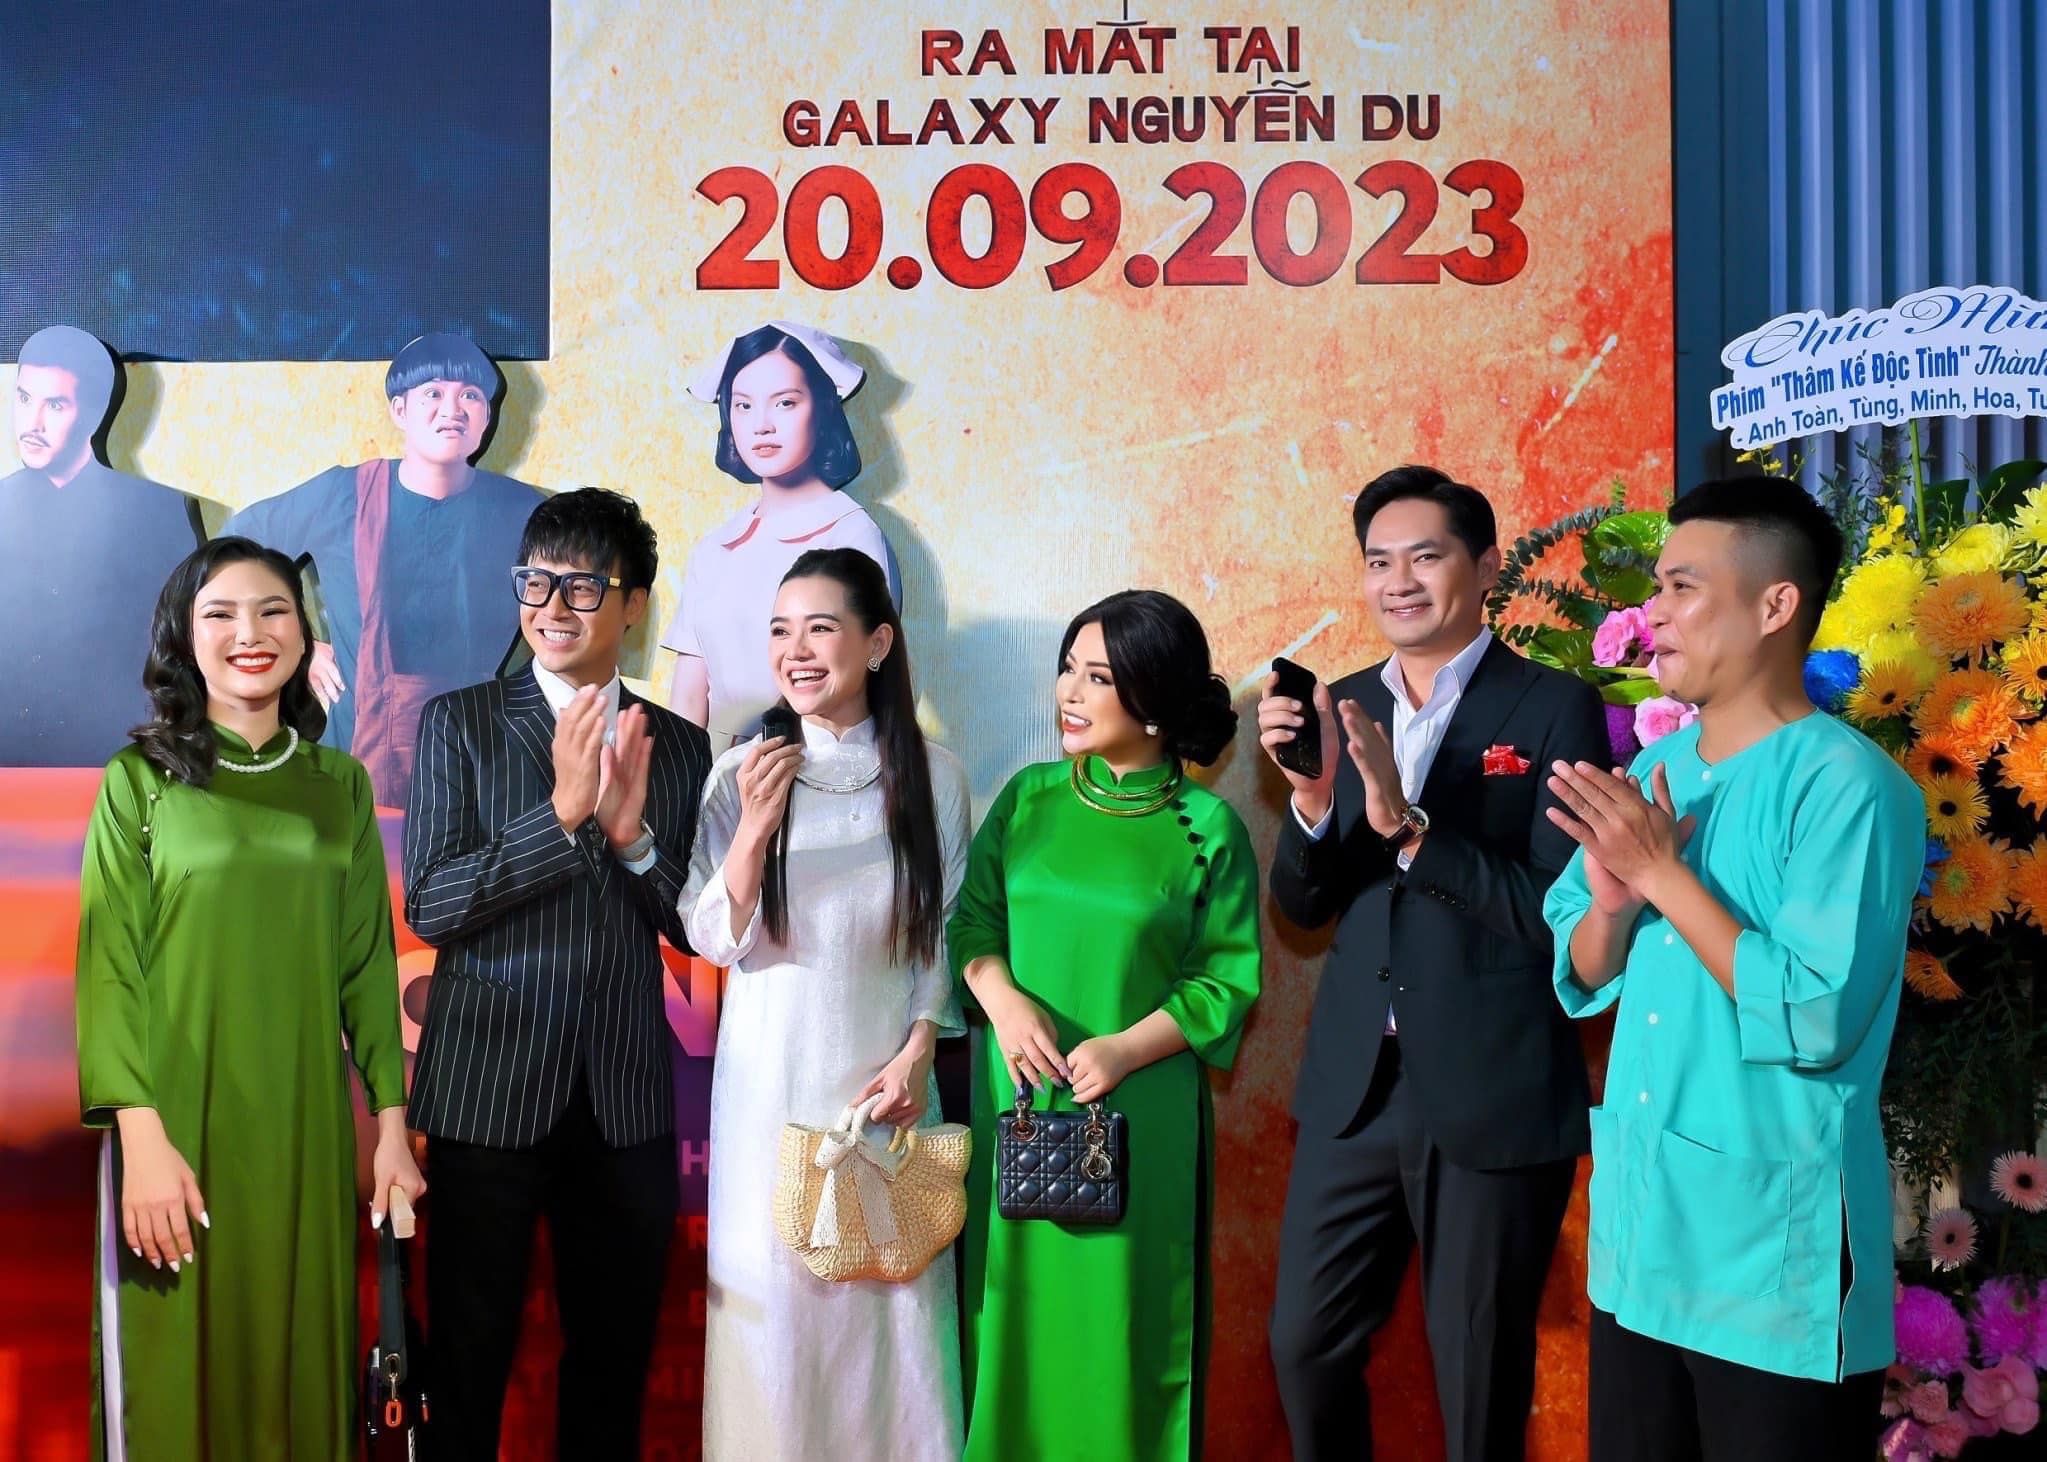 Diễn viên Thanh Duy, Minh Luân & Đoàn Minh Tài nổi bật trong các bộ trang phục Suit Mon Amie tại lễ ra mắt phim THÂM KẾ ĐỘC TÌNH"  tại Galaxy Nguyễn Du đêm 20/09.